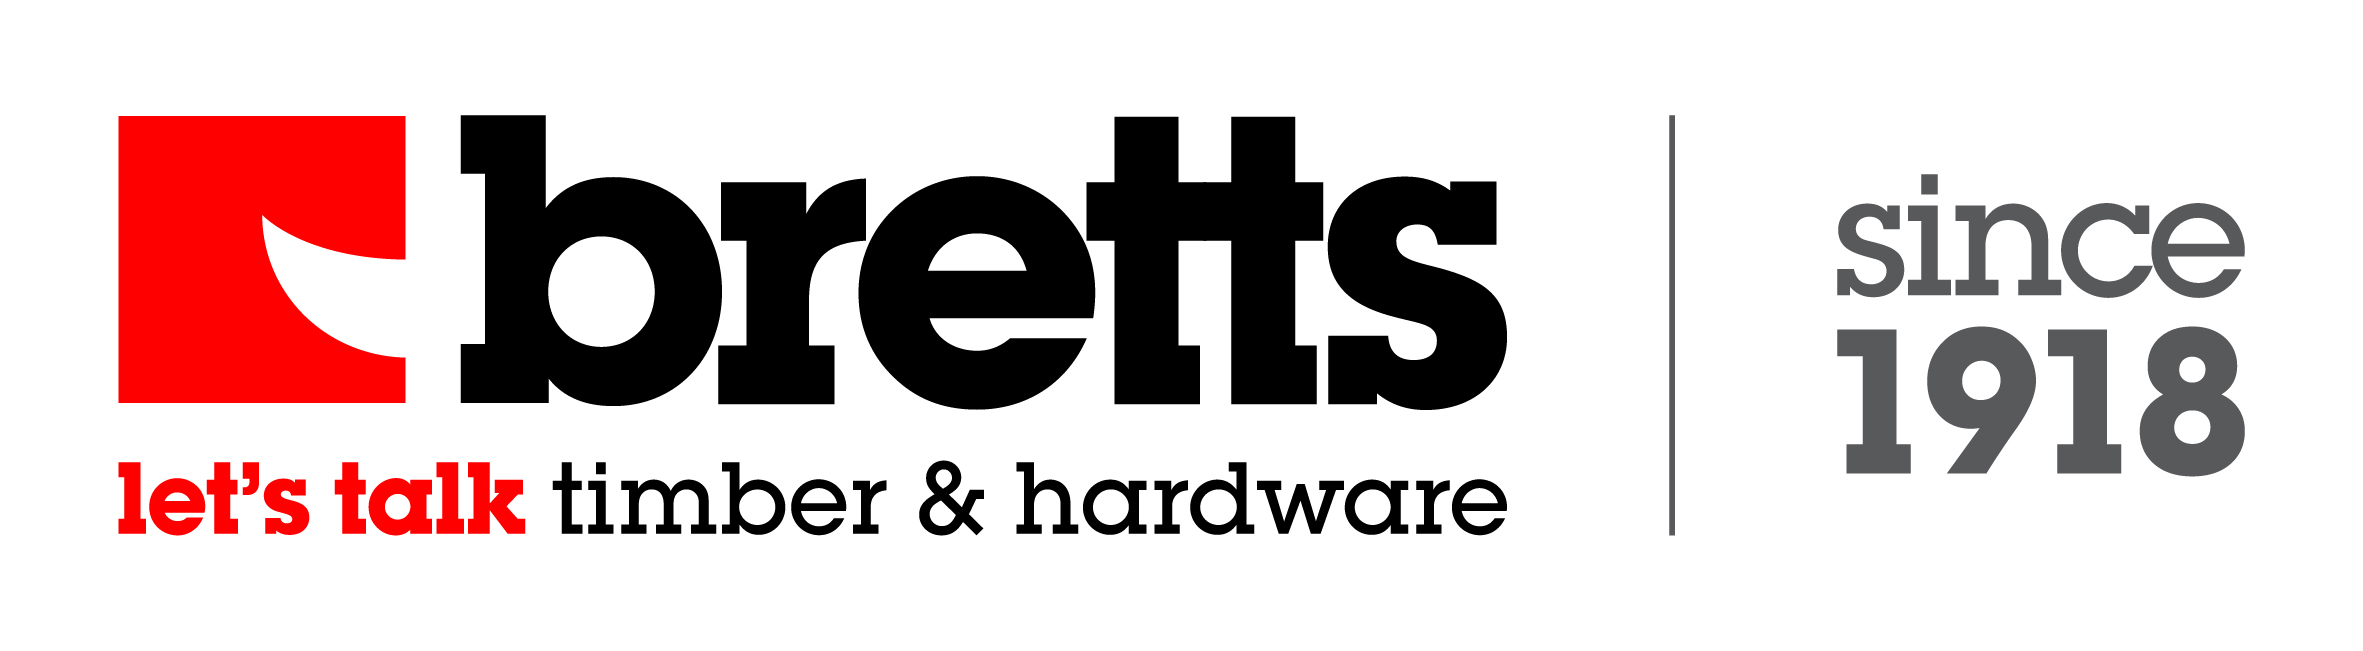 Bretts-logo